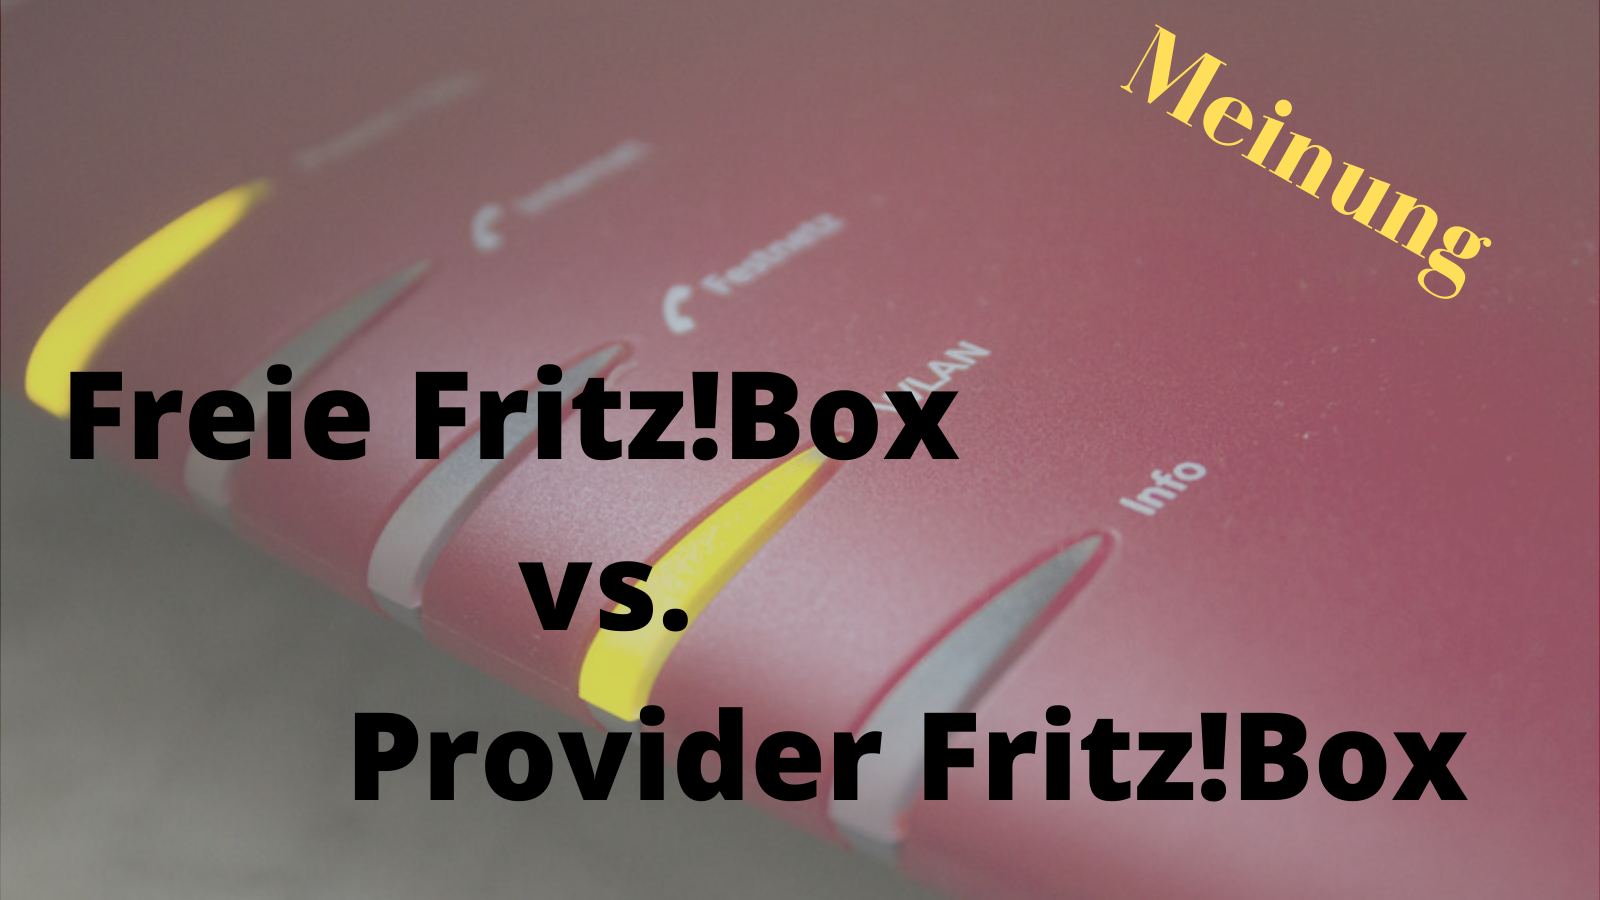 Freie Fritz!Box vs. Provider-Box